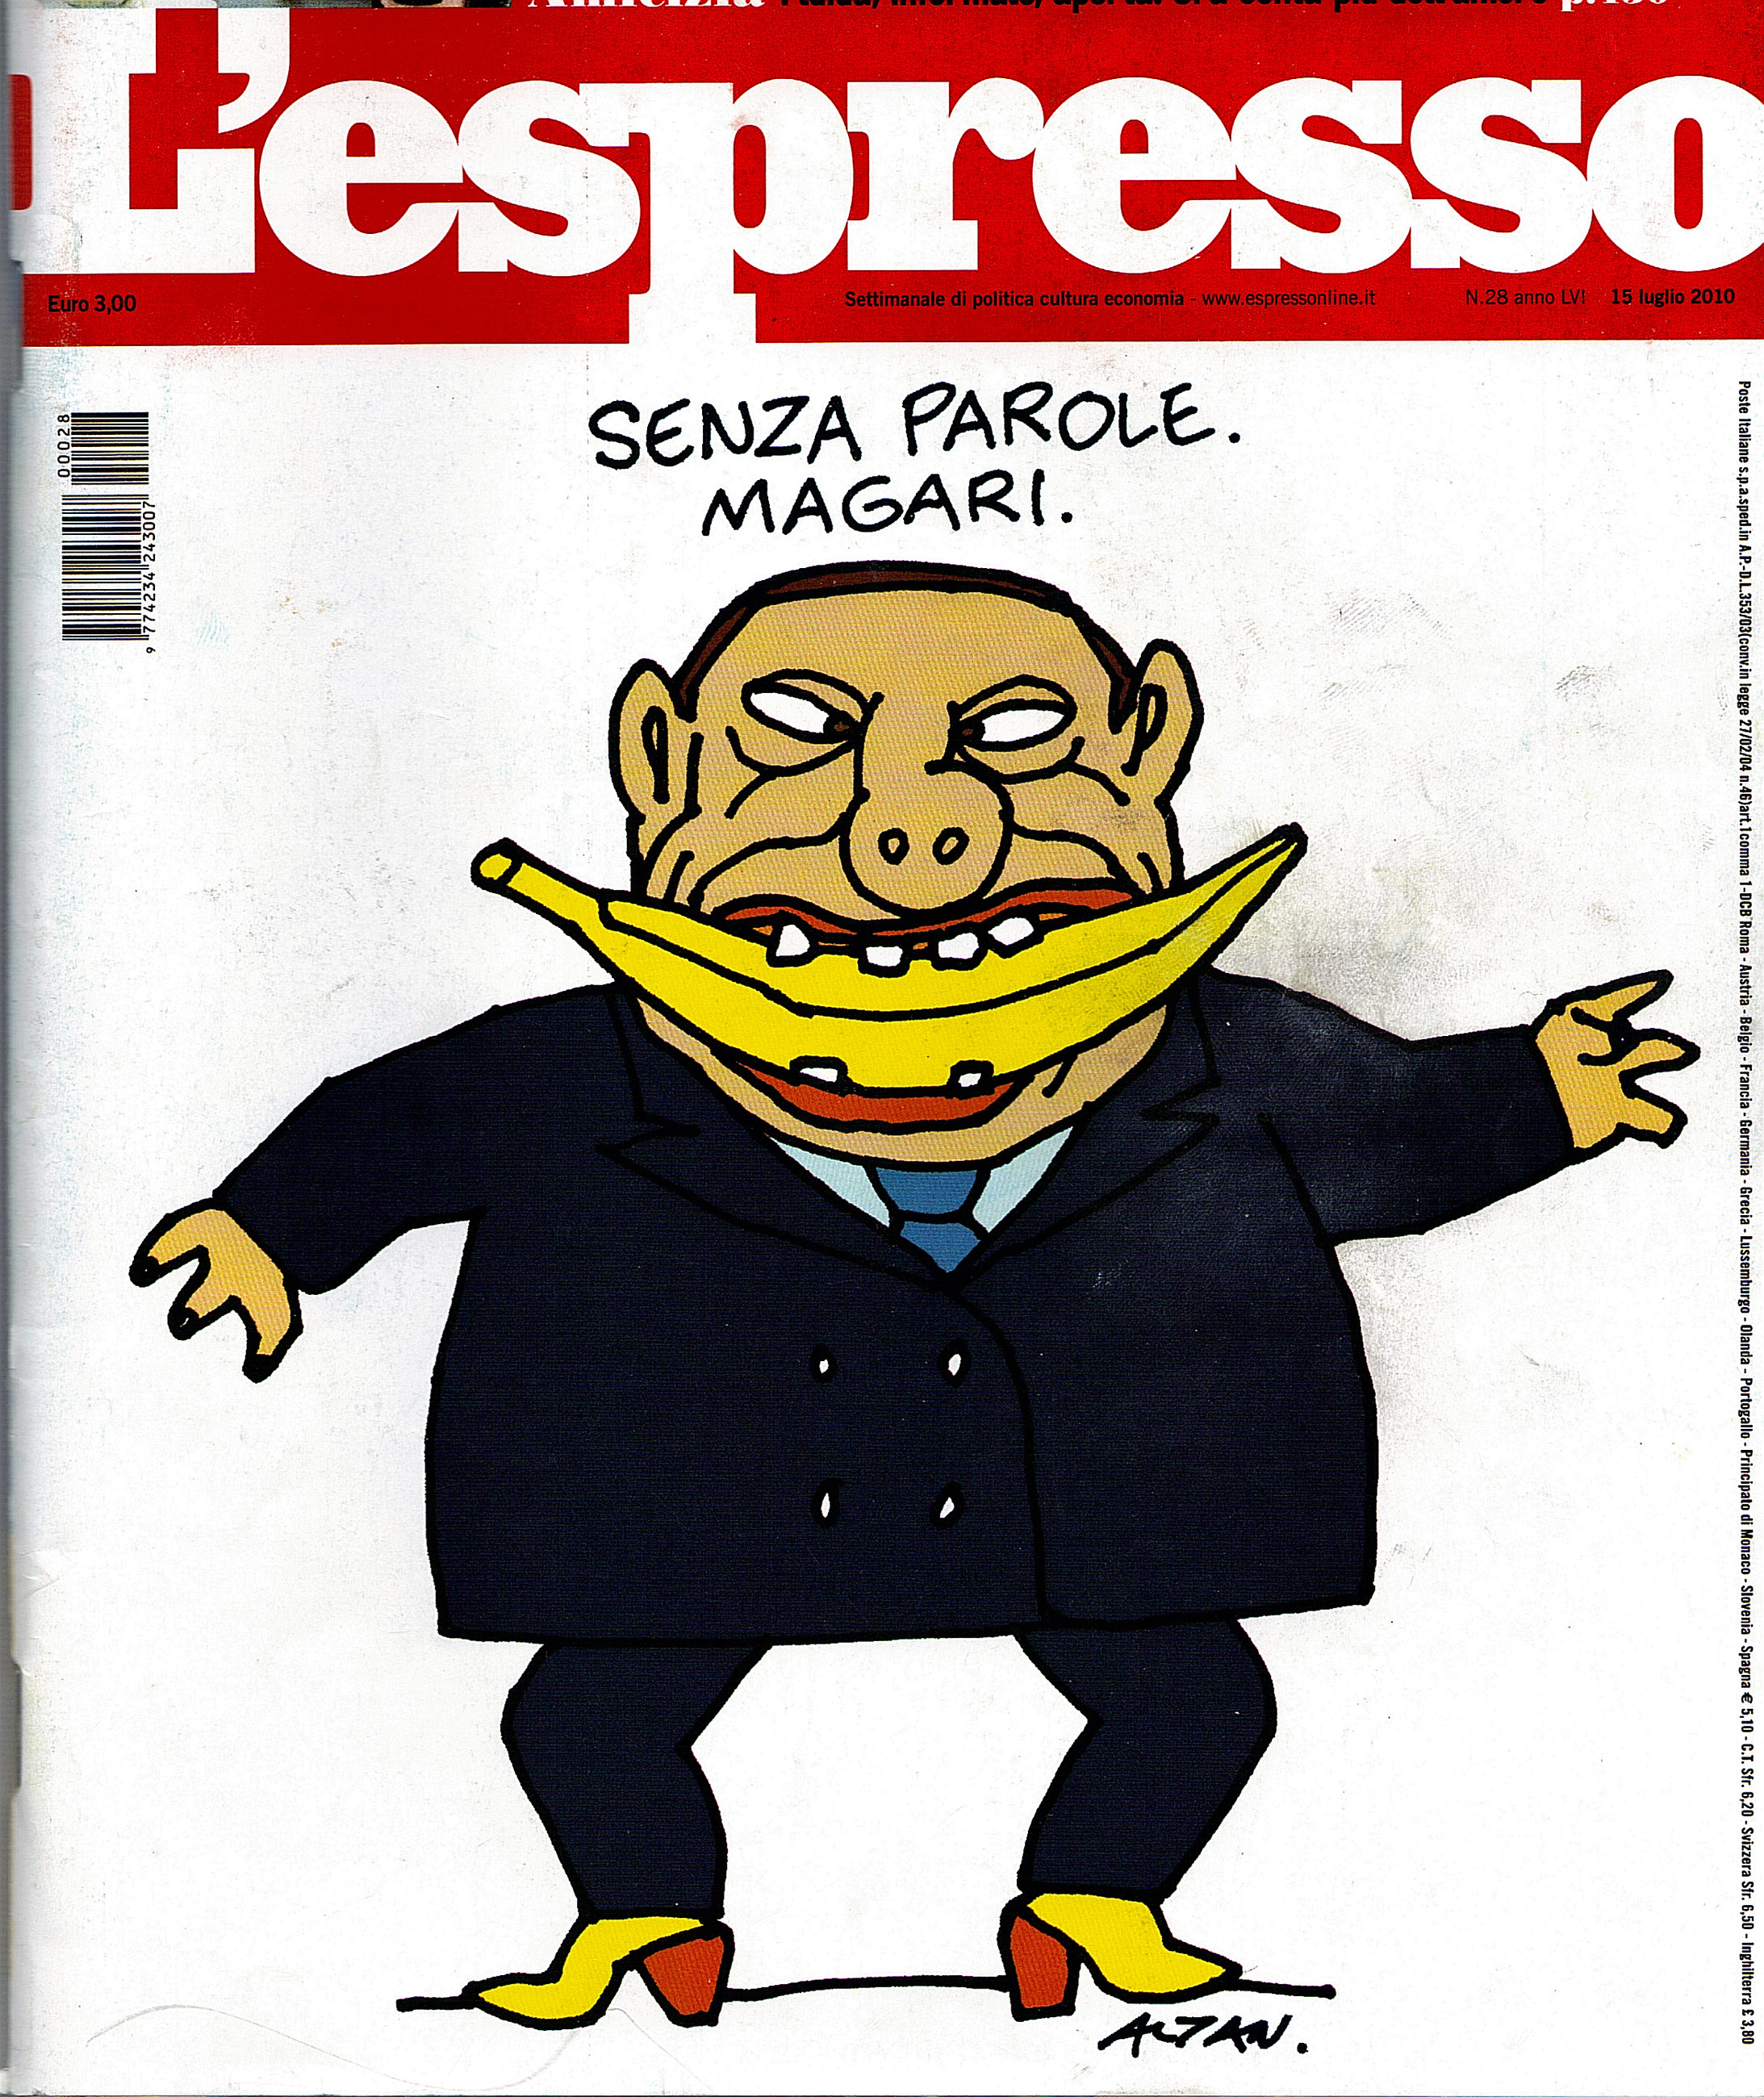 Mit Banane und hohen Absätzen. So zeichneten die Oppositionsblätter den Ministerpräsidenten. Das Titelbild des Wochenmagazins „L’Espresso“ wurde vor gut einem Jahr publiziert und hat in Italien Kult-Status. Berlusconi, Chef „seiner“ Bananenrepublik.